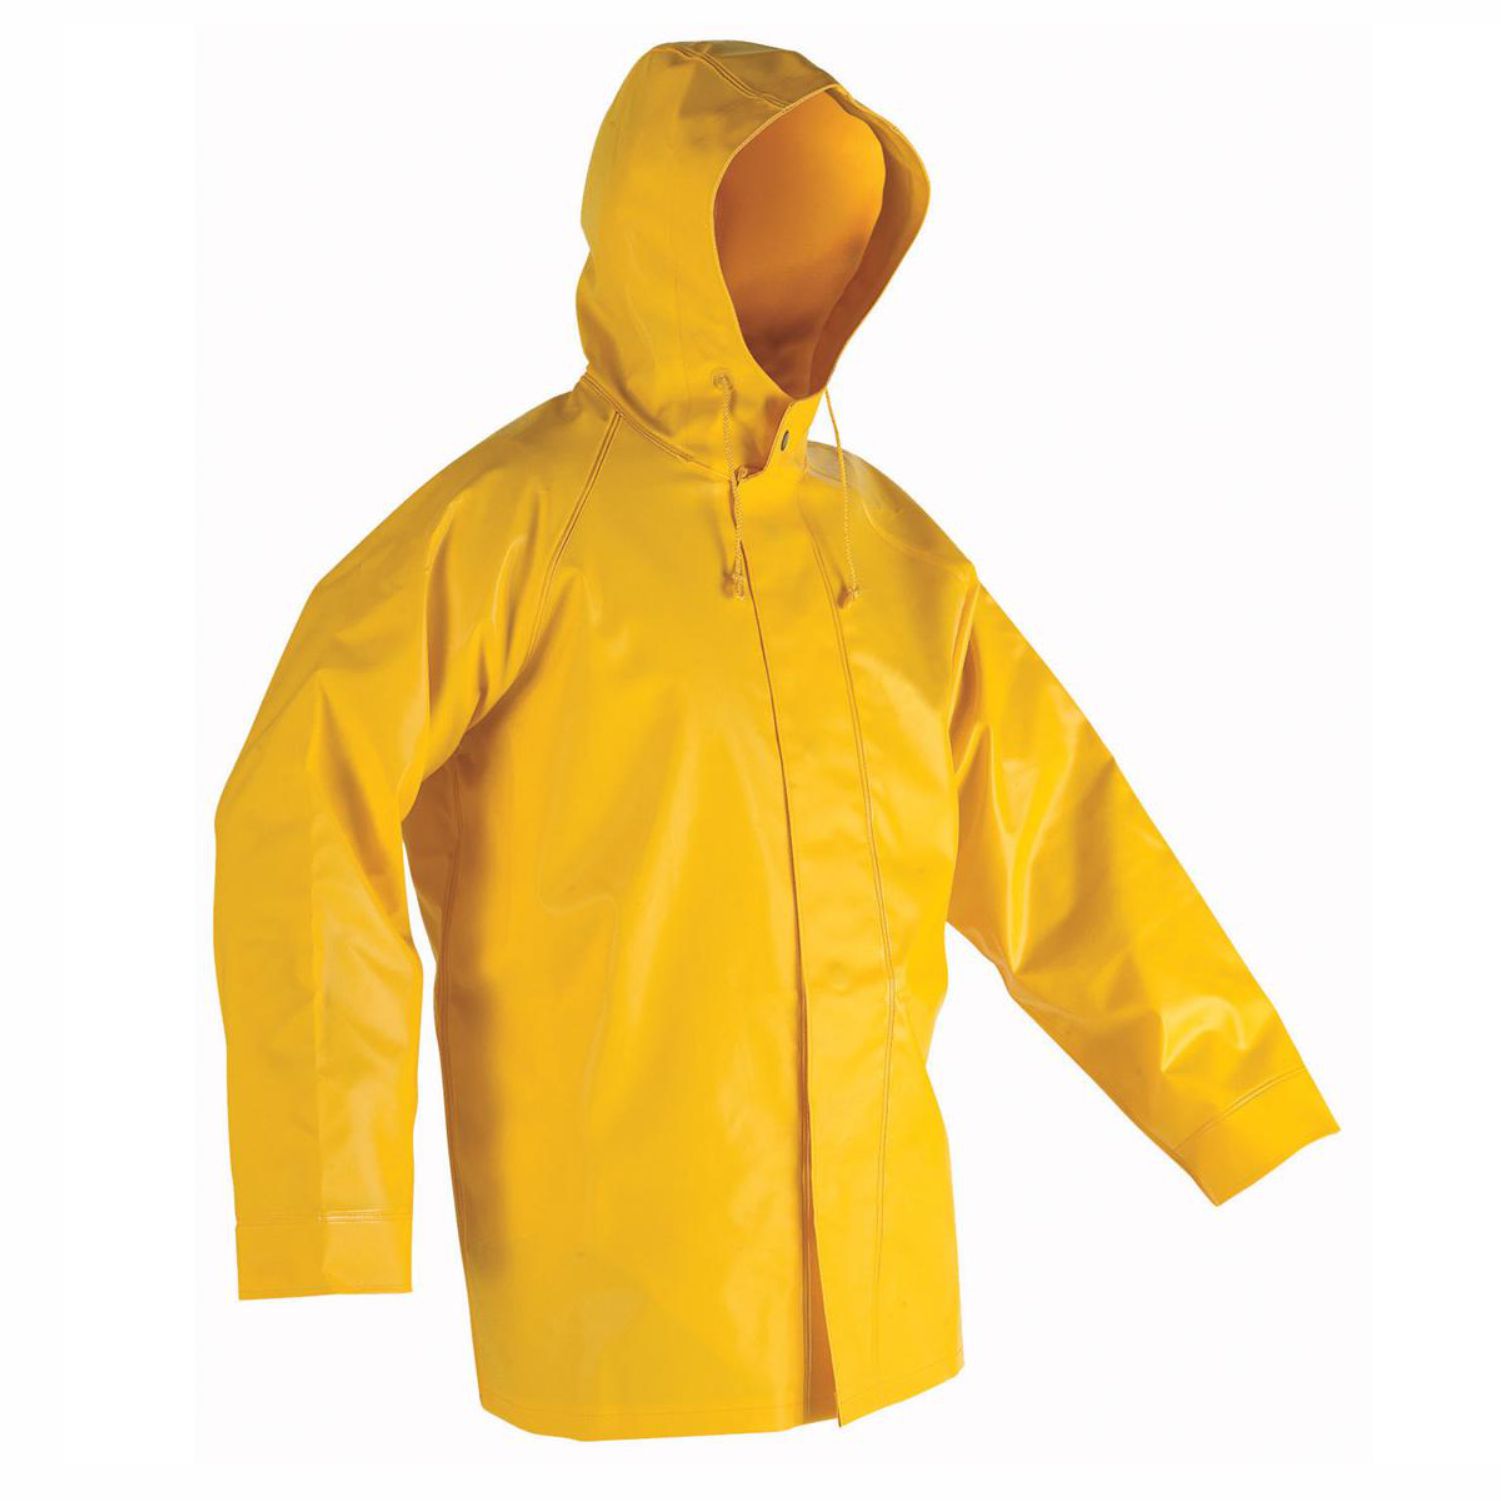 Дождевик на английском. Плащ ПВХ желтый (l) pvc1. Плащ резиновый желтый с капюшоном Tolsen 45097 размер l. Желтый дождевик мужской. Желтая куртка дождевик.